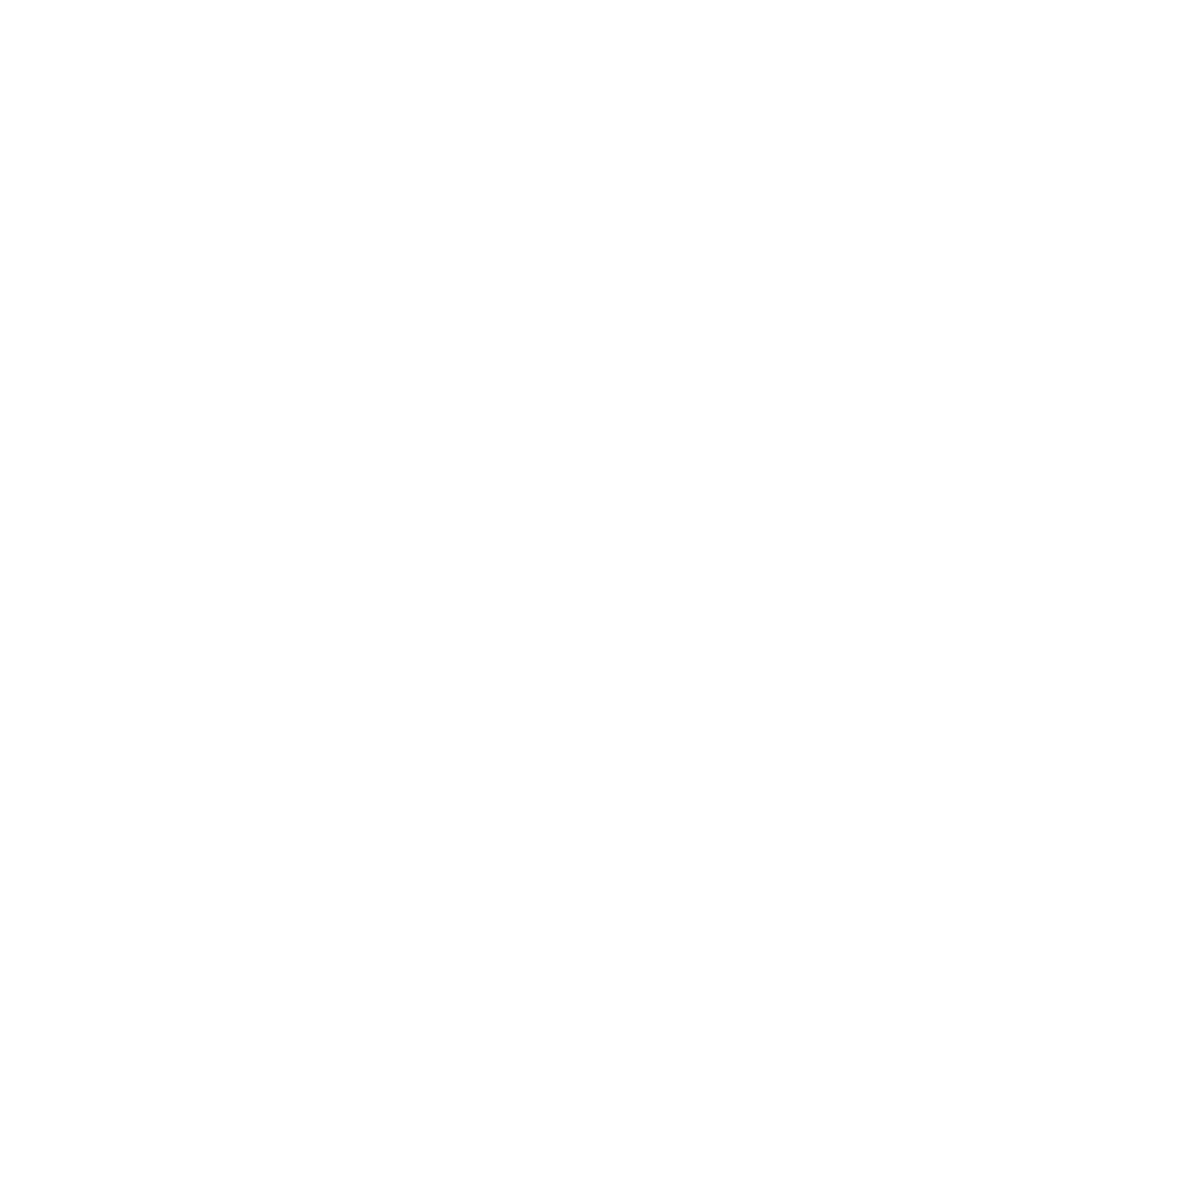 LBW